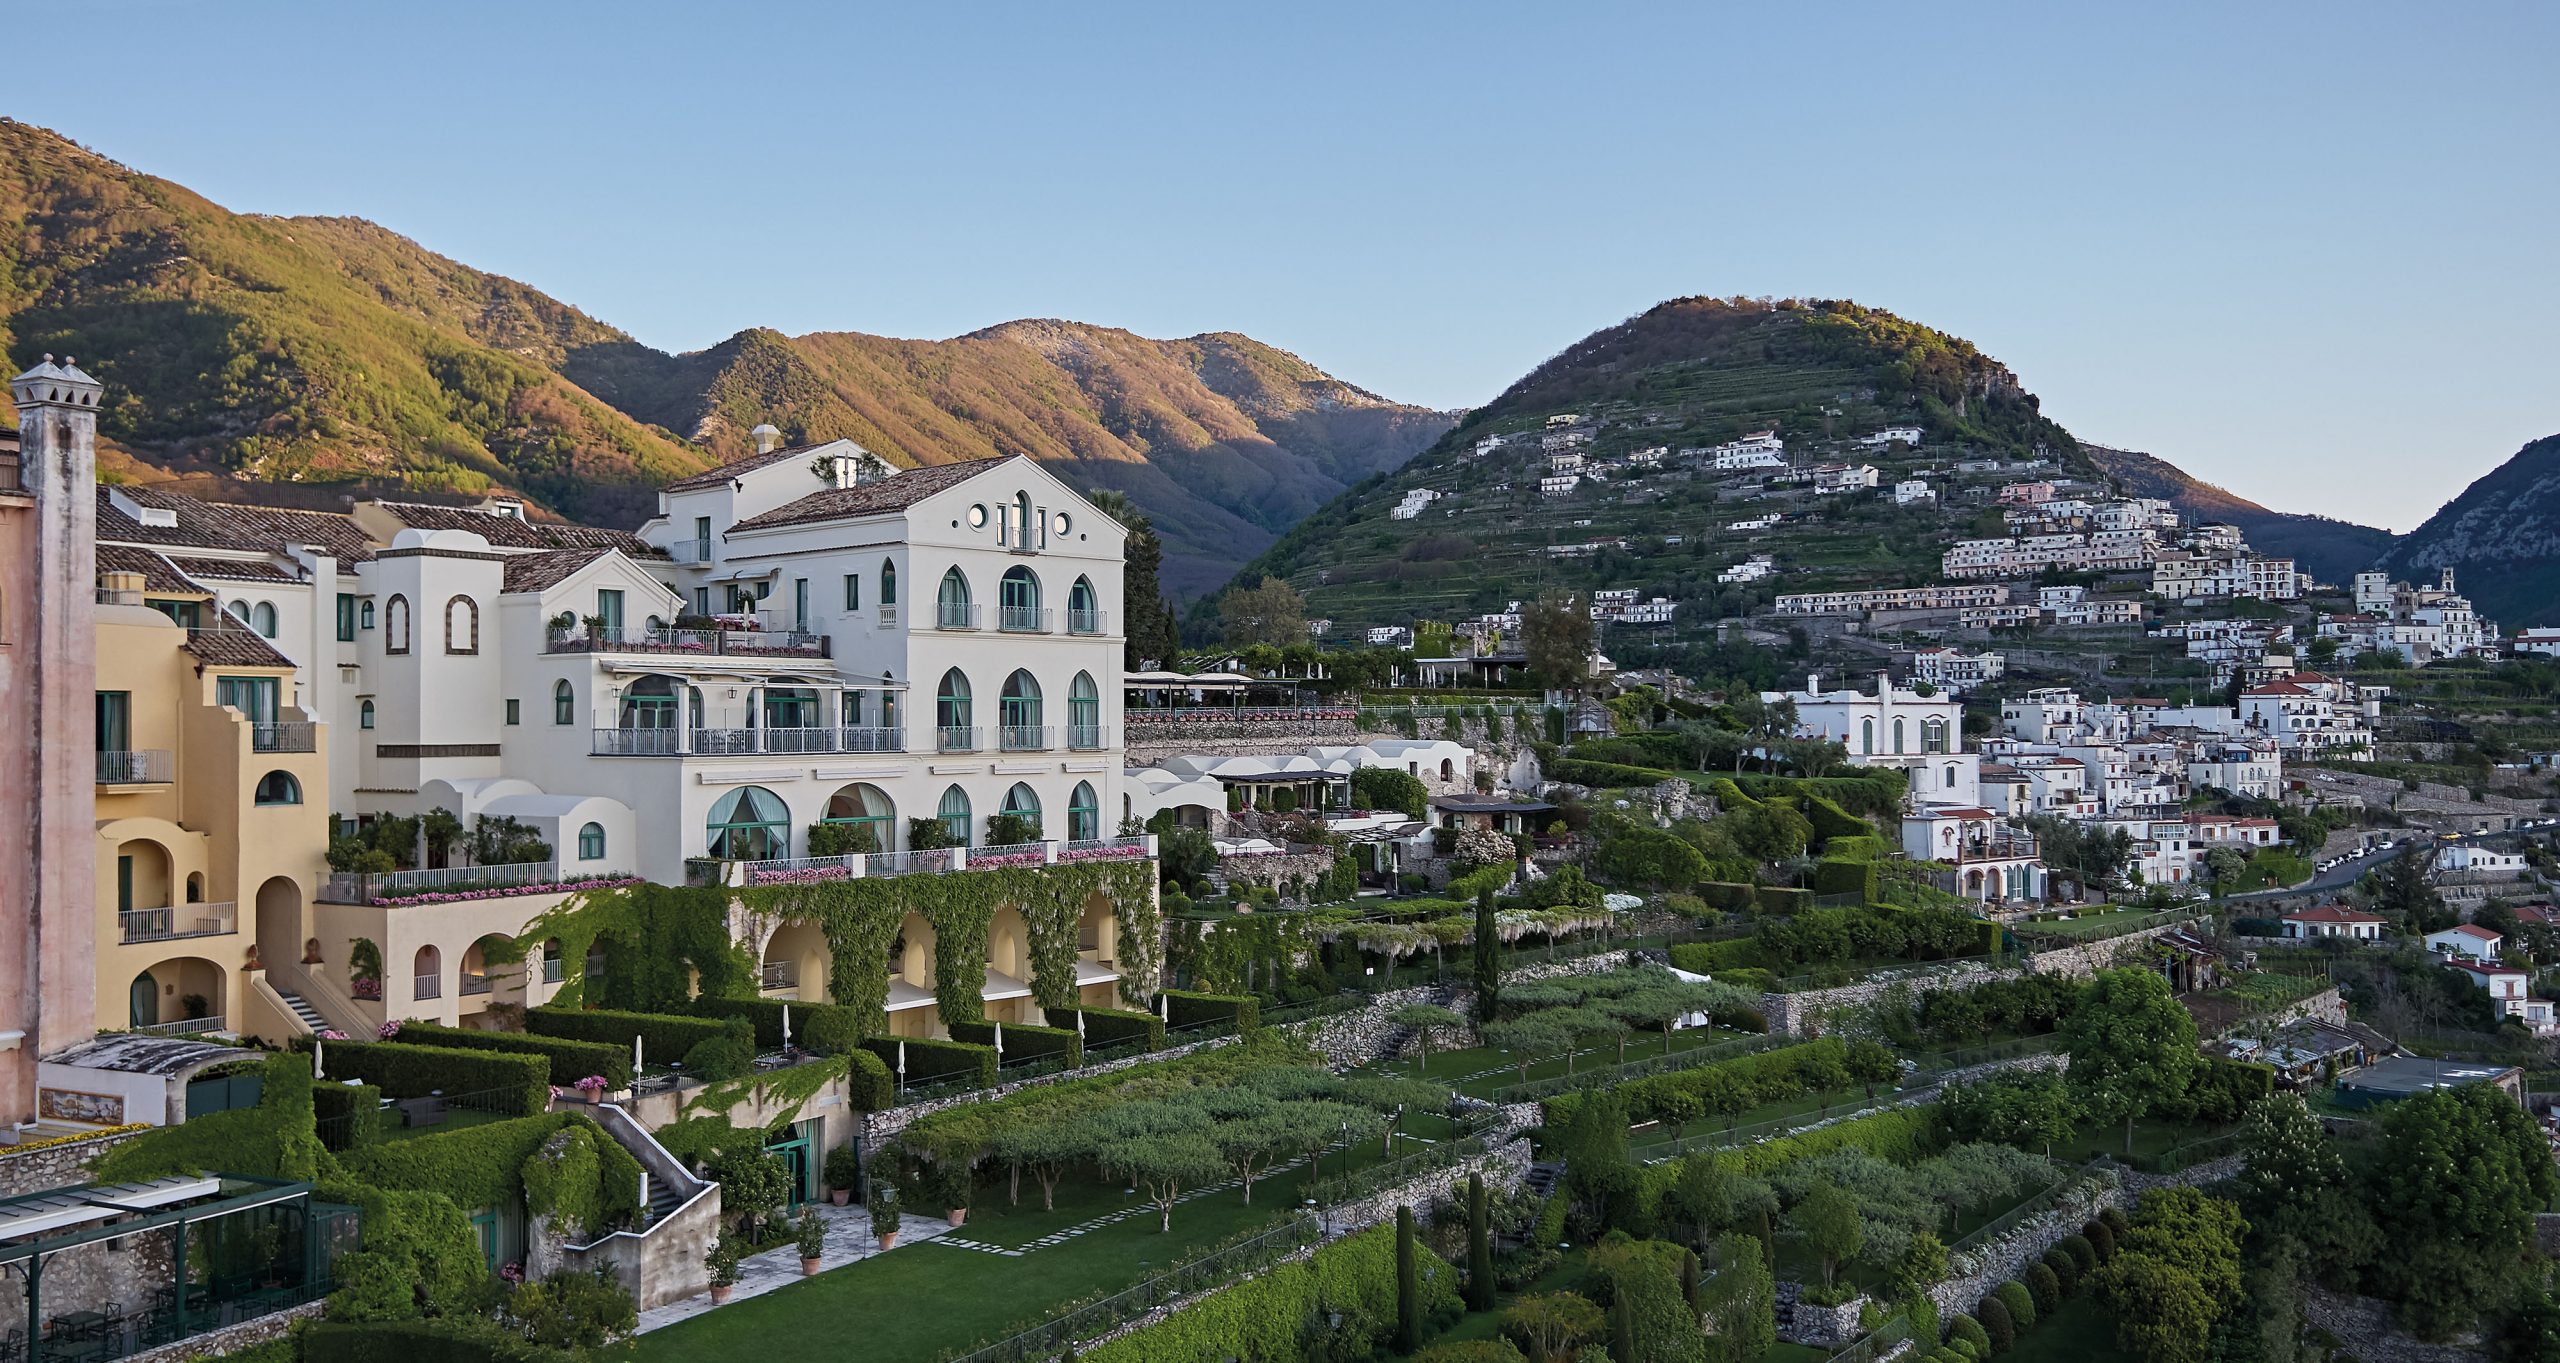 Belmond Hotel Caruso - Italian Allure Travel